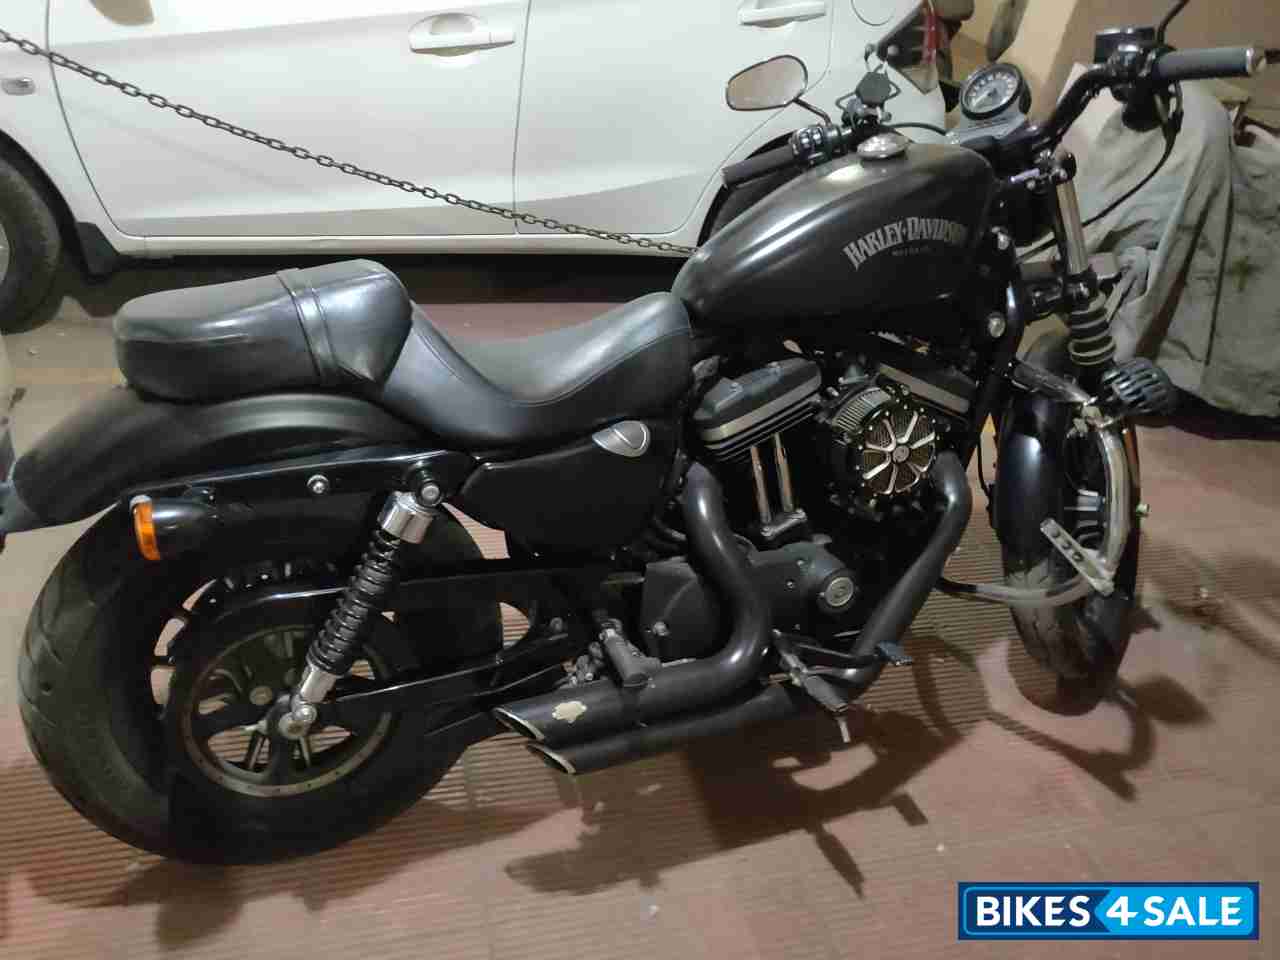 Mat Black Harley Davidson Iron 883